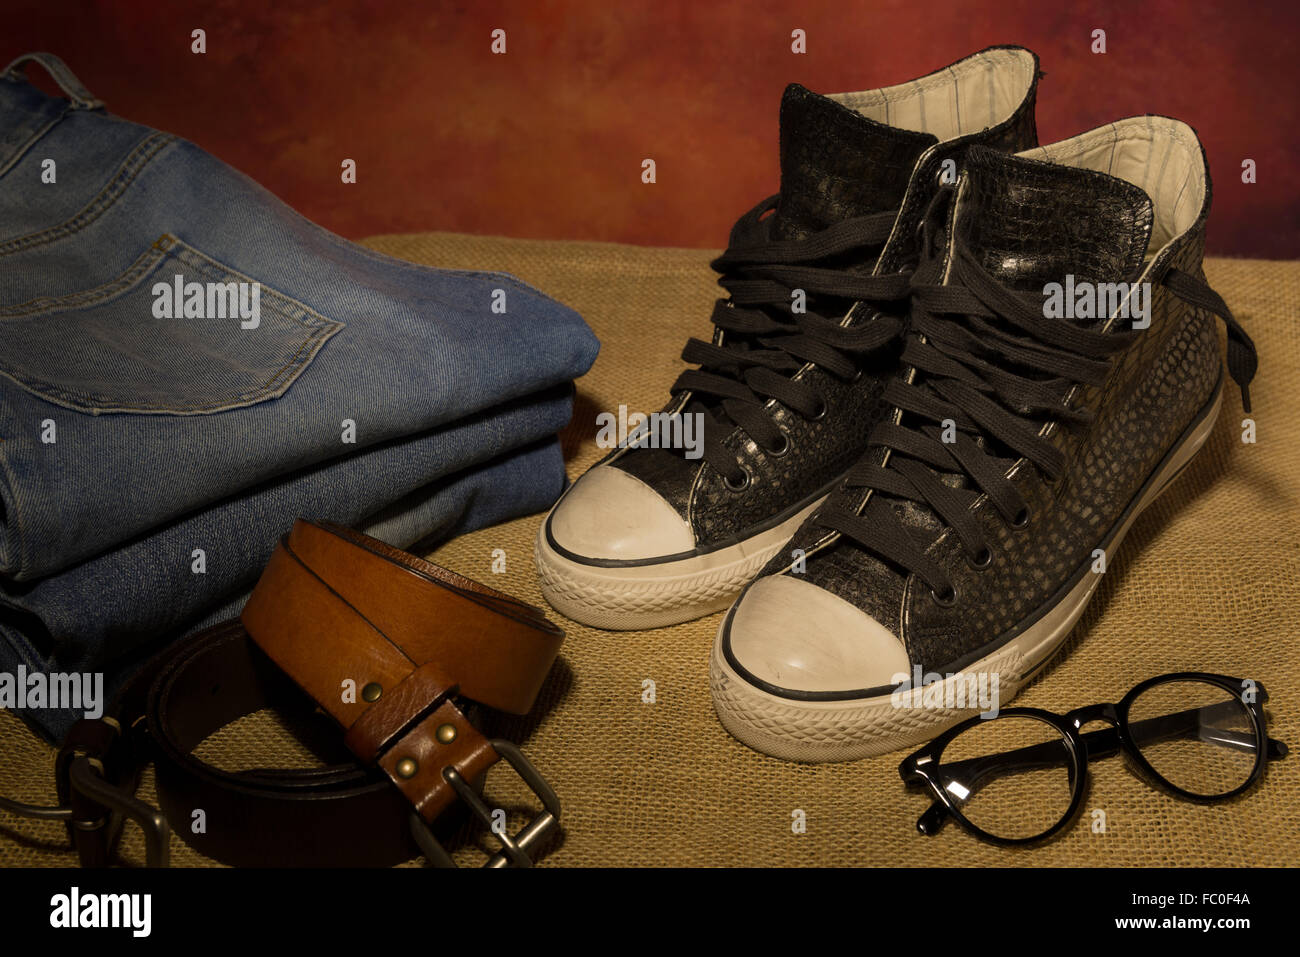 La vie encore hommes accessoires, chaussures noires, ceinture de cuir brun, des jeans, des bottes Banque D'Images